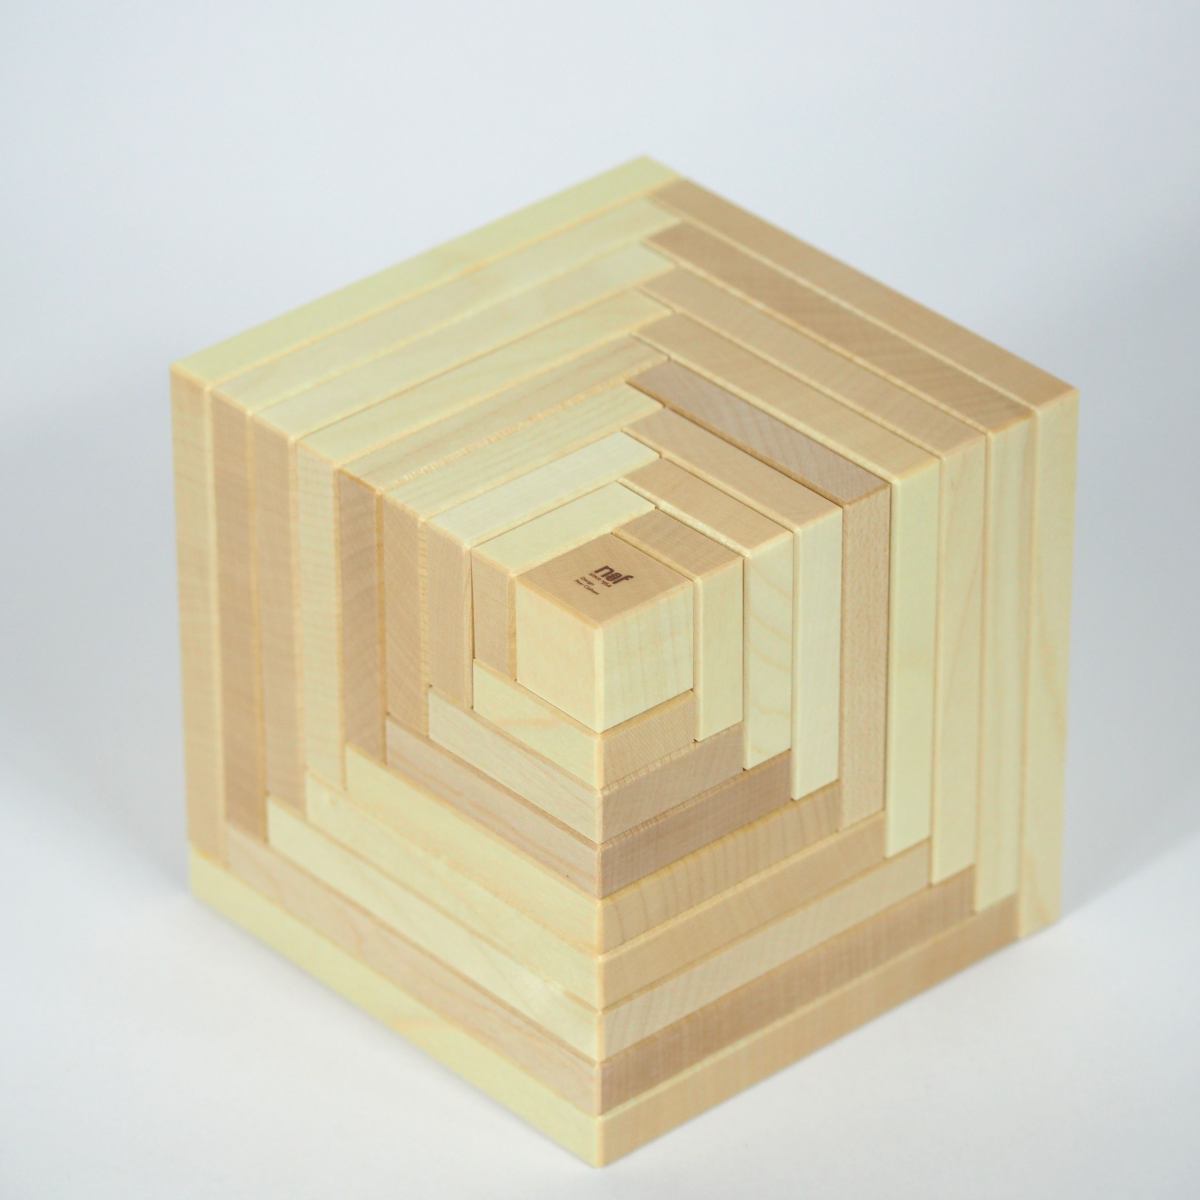 Cella (Natur) – Originales Naef-Spiel aus Holz für kreative Konstruktionen